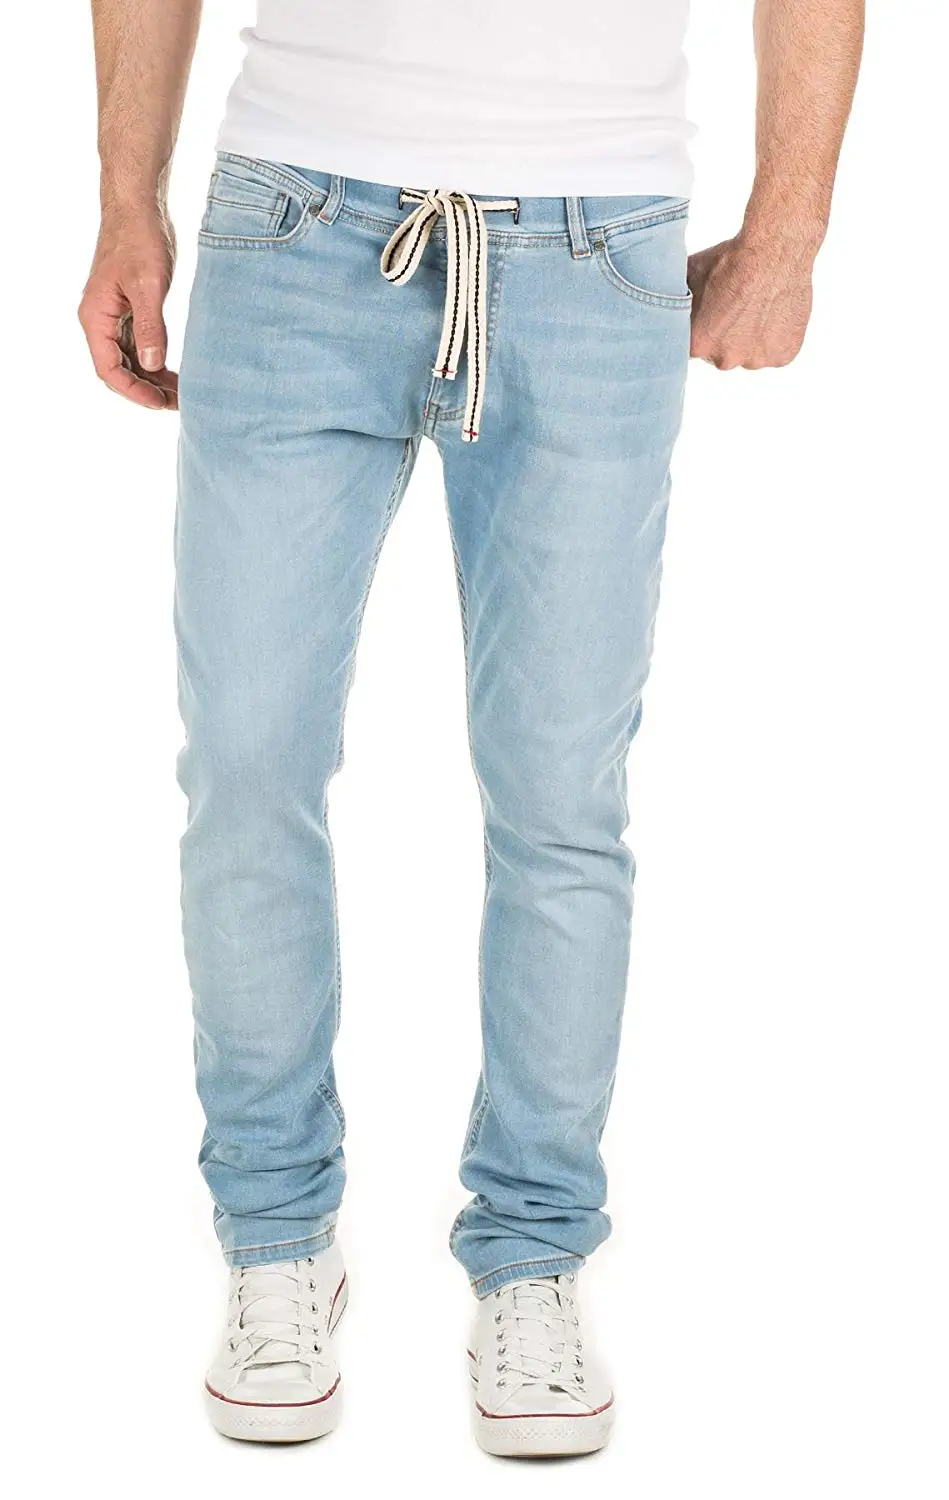 Cheap Sweatpants Jeans For Men, find Sweatpants Jeans For Men deals on ...